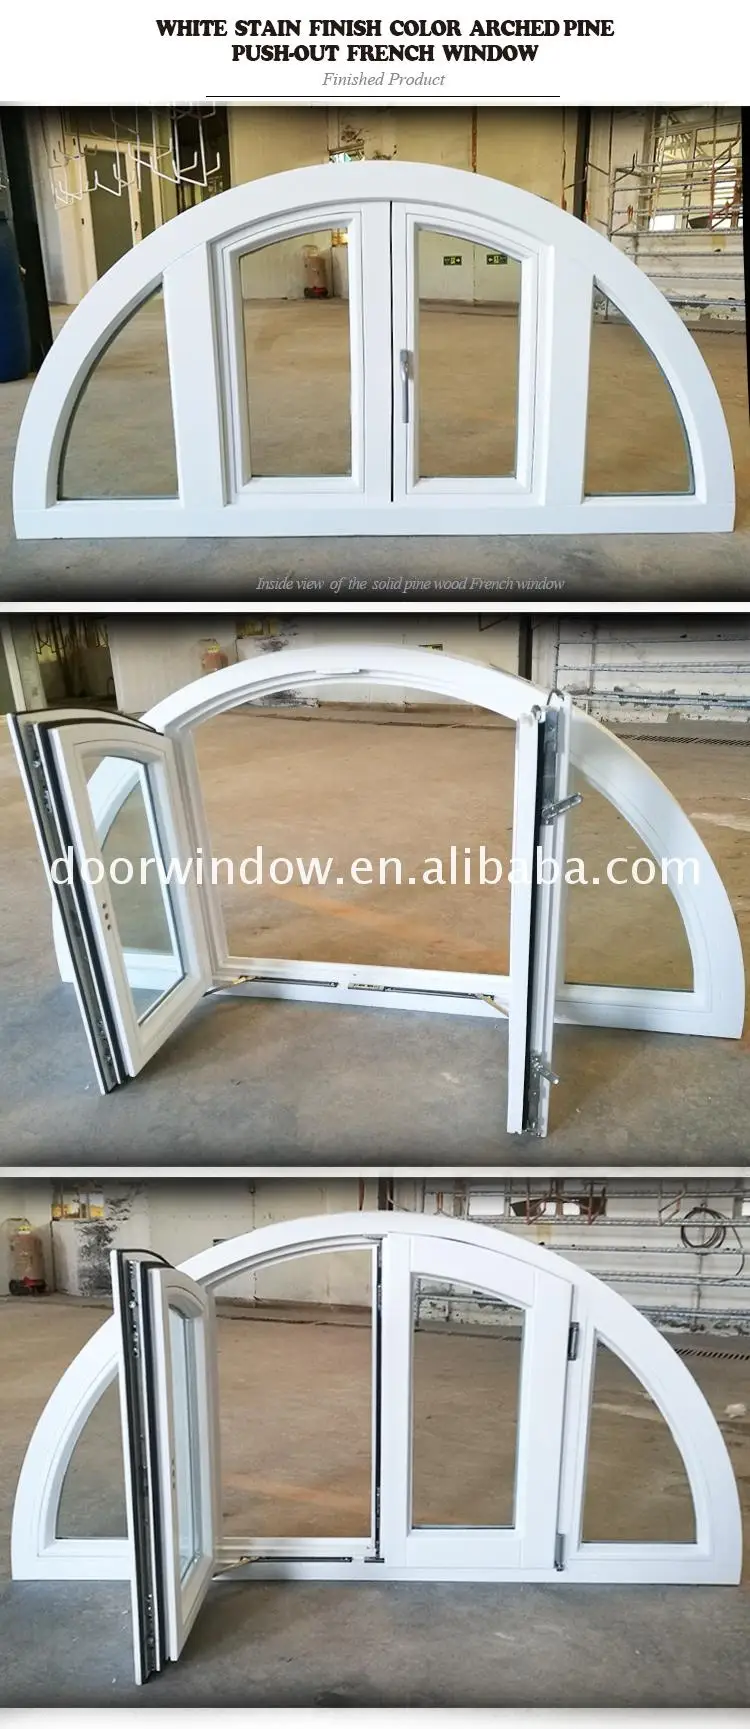 Windsor round window manufacturer round window house horizontal open round window